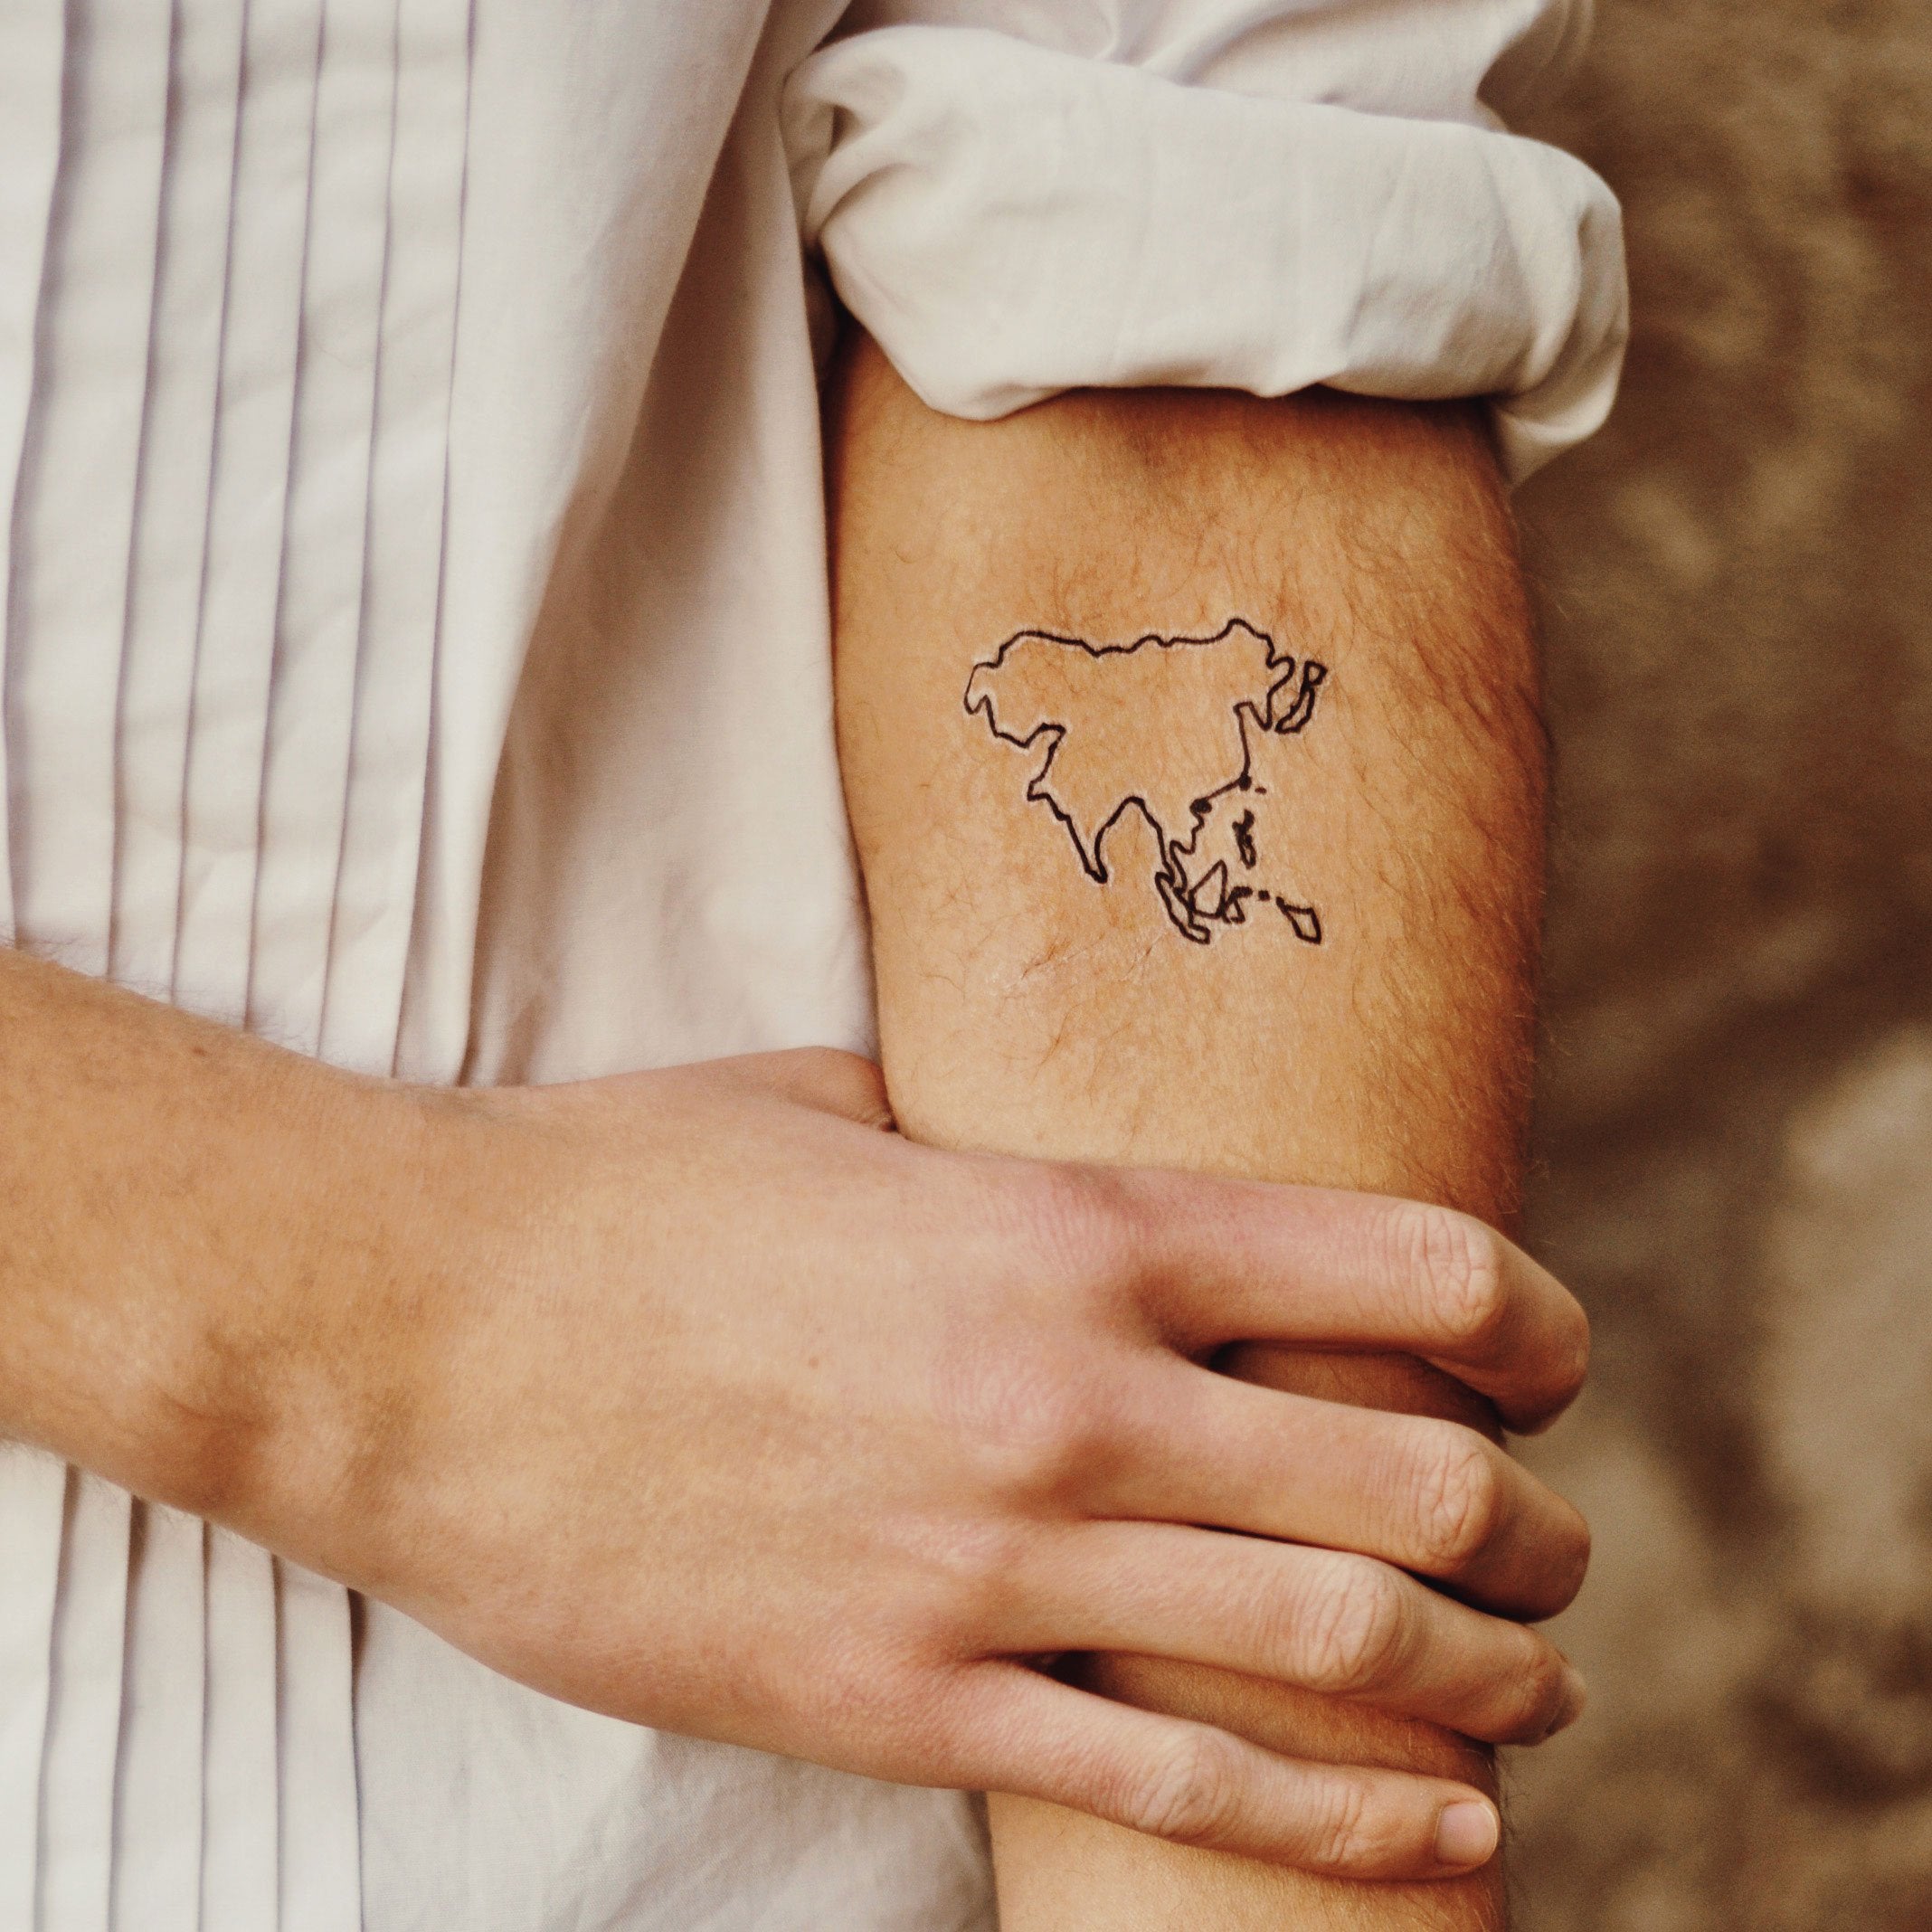 world map tattoo arm